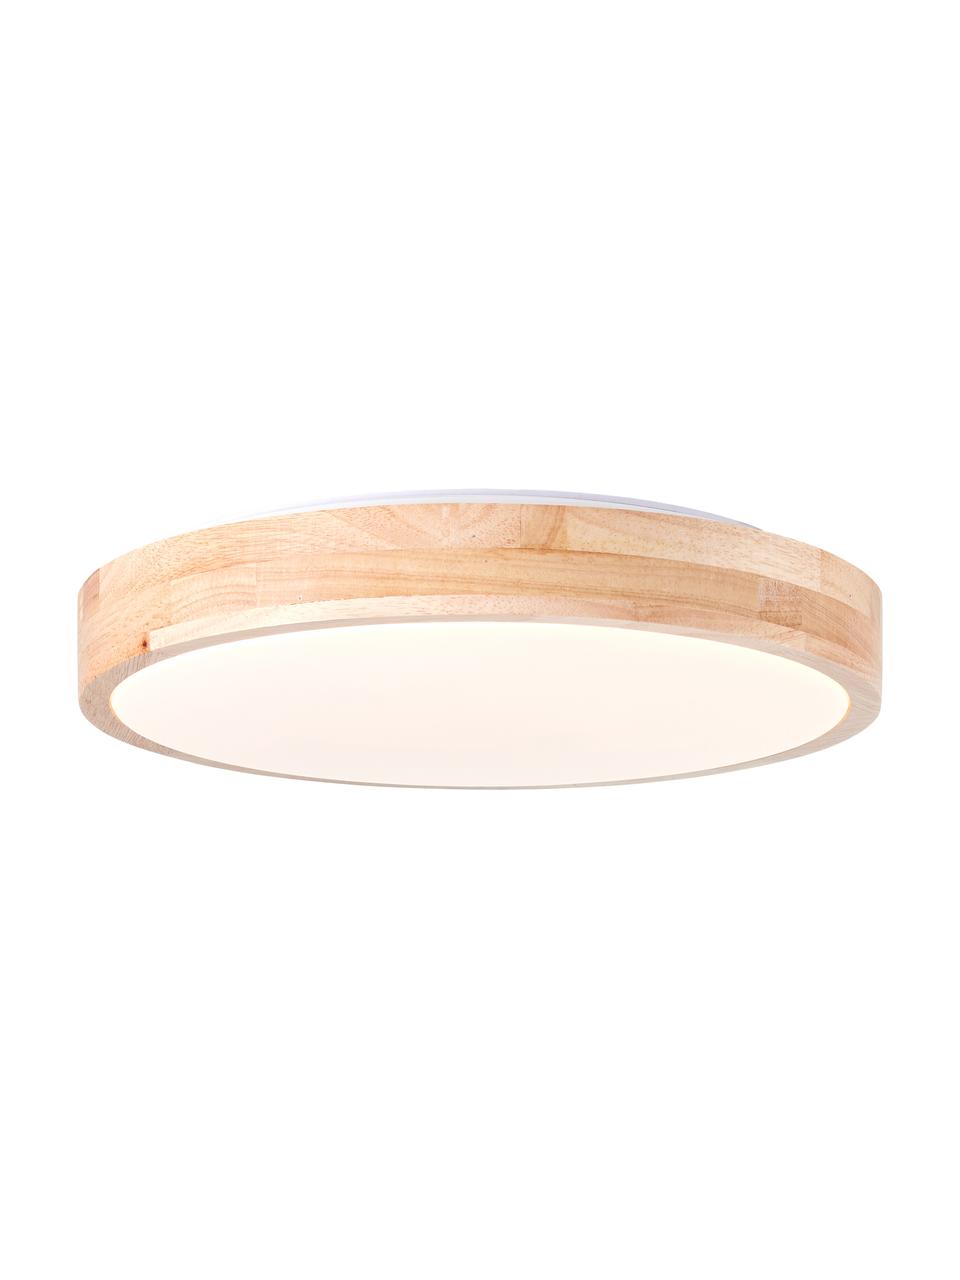 LED plafondlamp Slimline van hout, Lampenkap: hout, Diffuser: kunststof, Bruin, wit, Ø 34 x H 7 cm